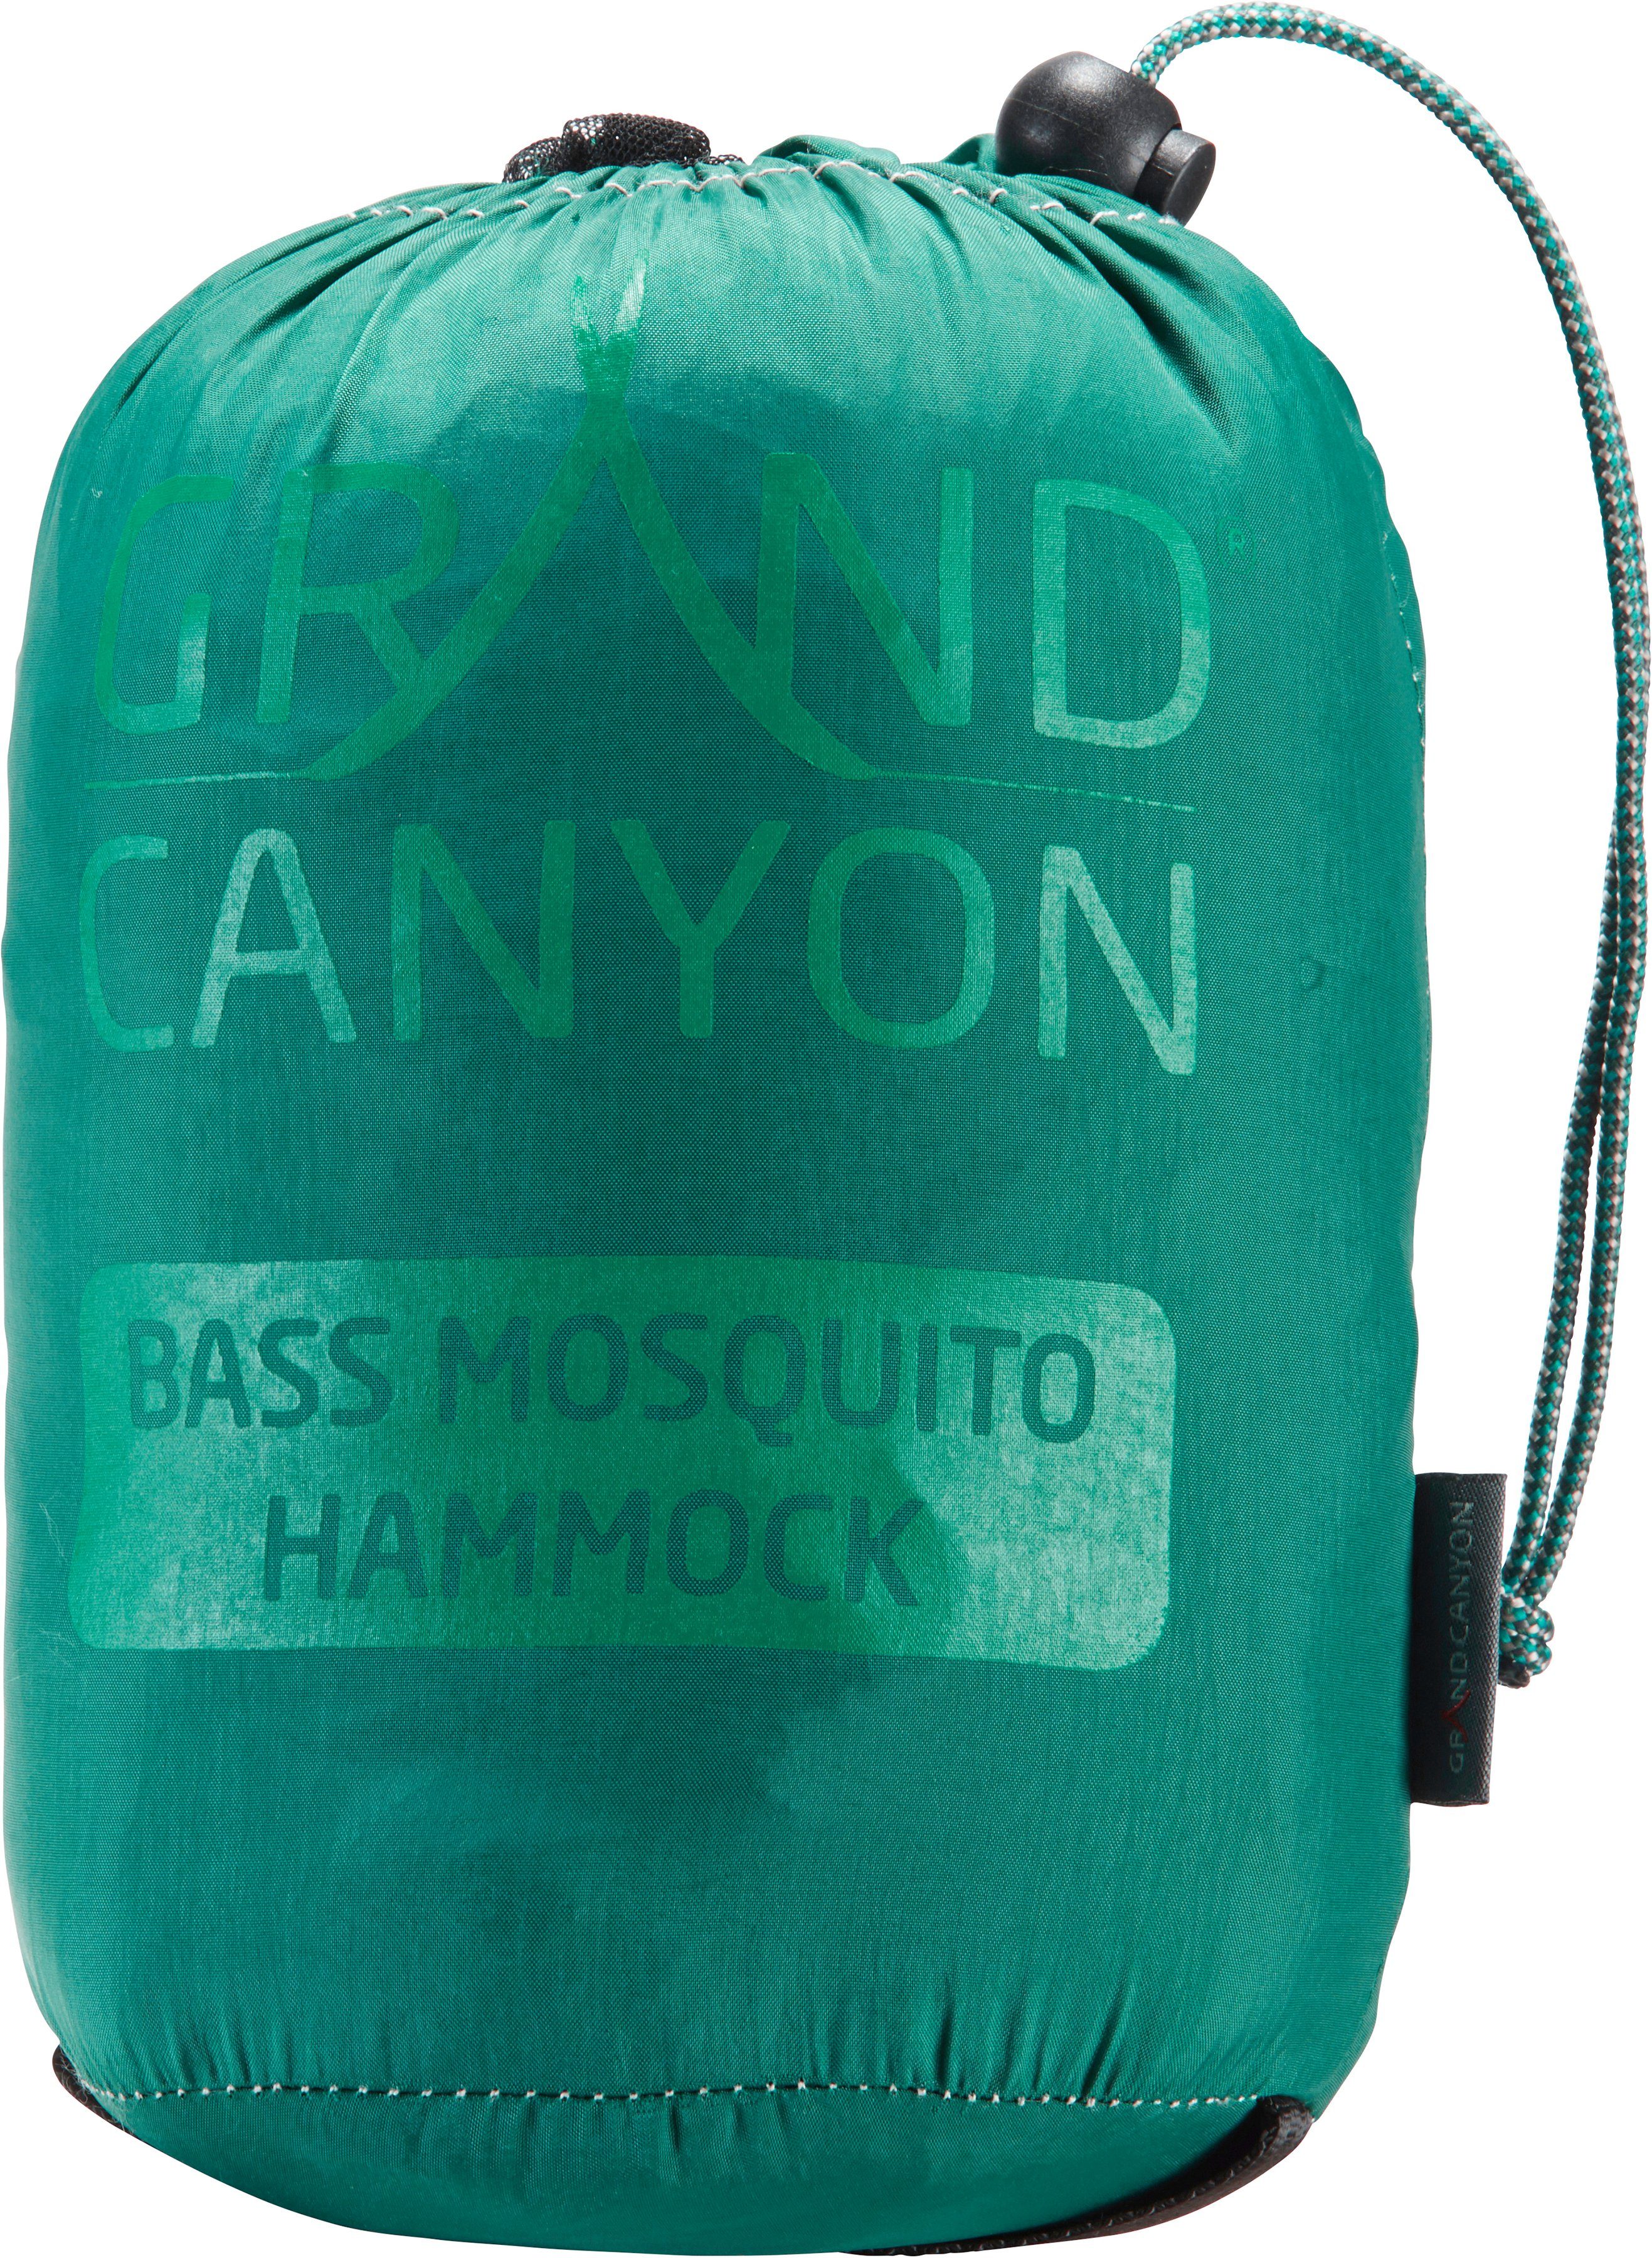 GRAND CANYON Hängematte grün Bass Hammock Mosquito Storm